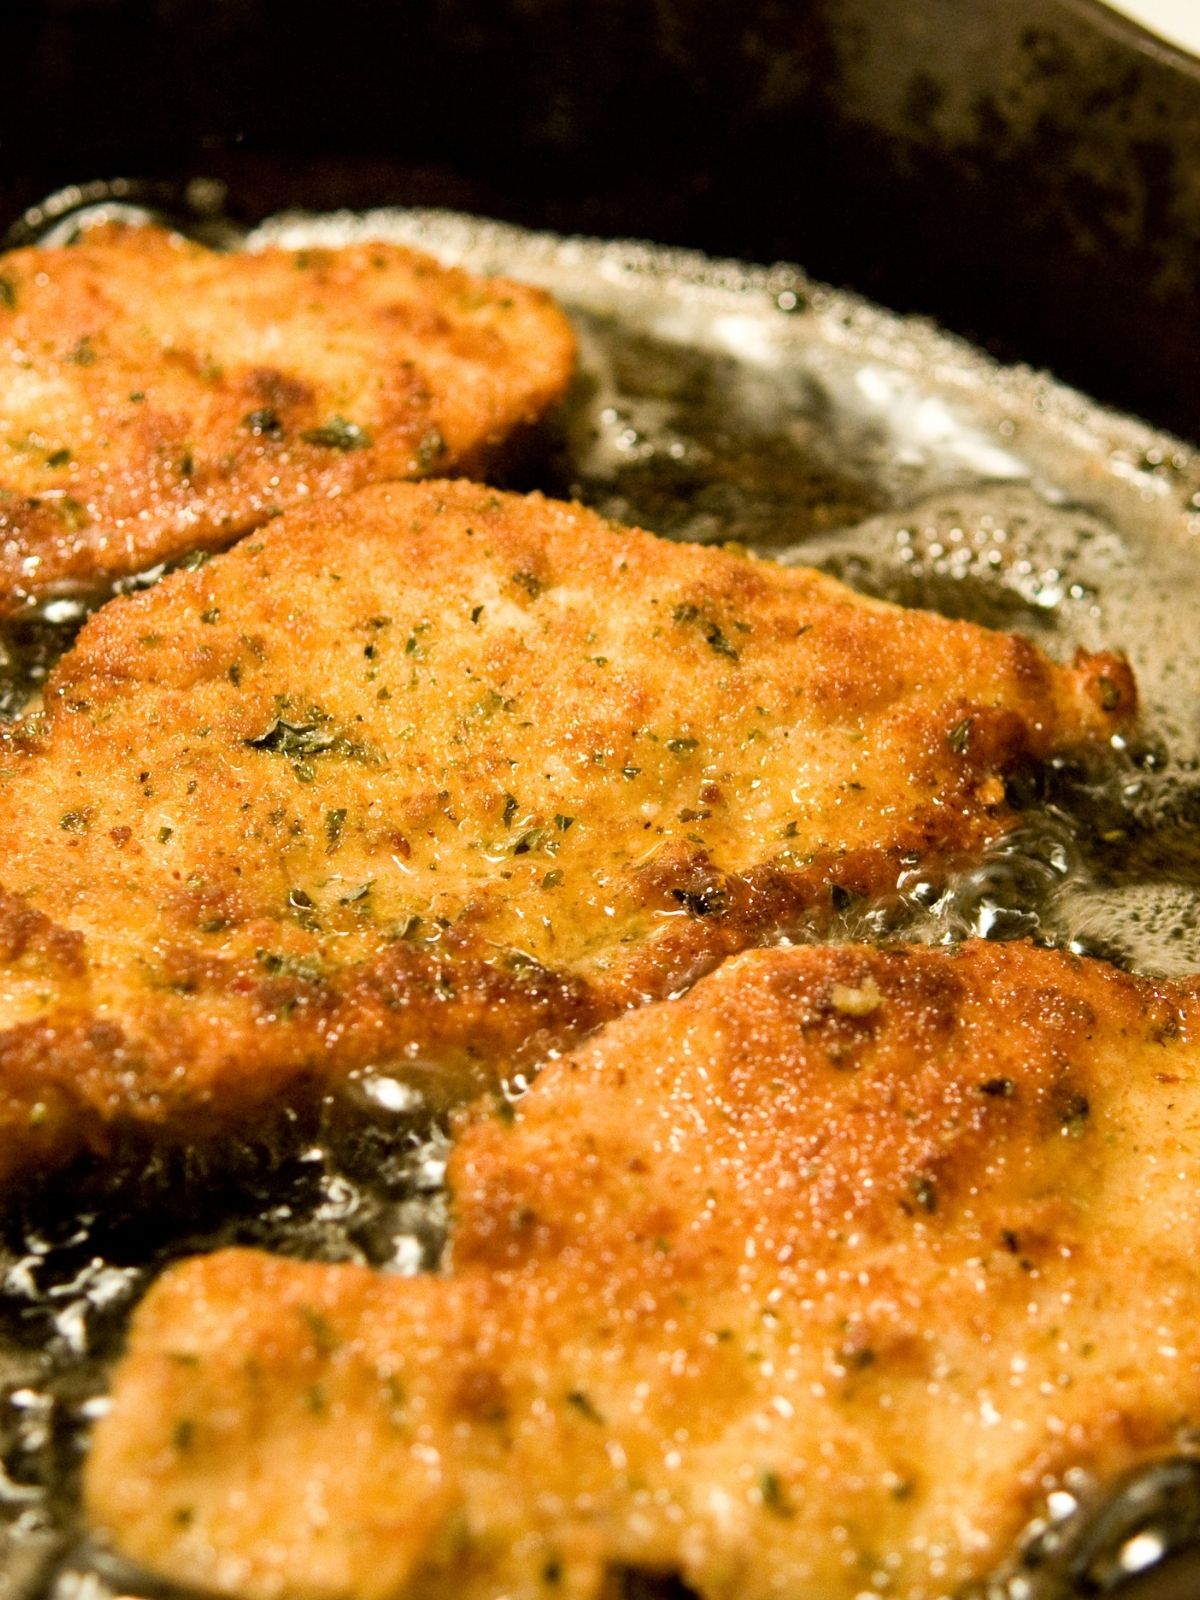  Italian Fried Chicken cutlets in frying pan.